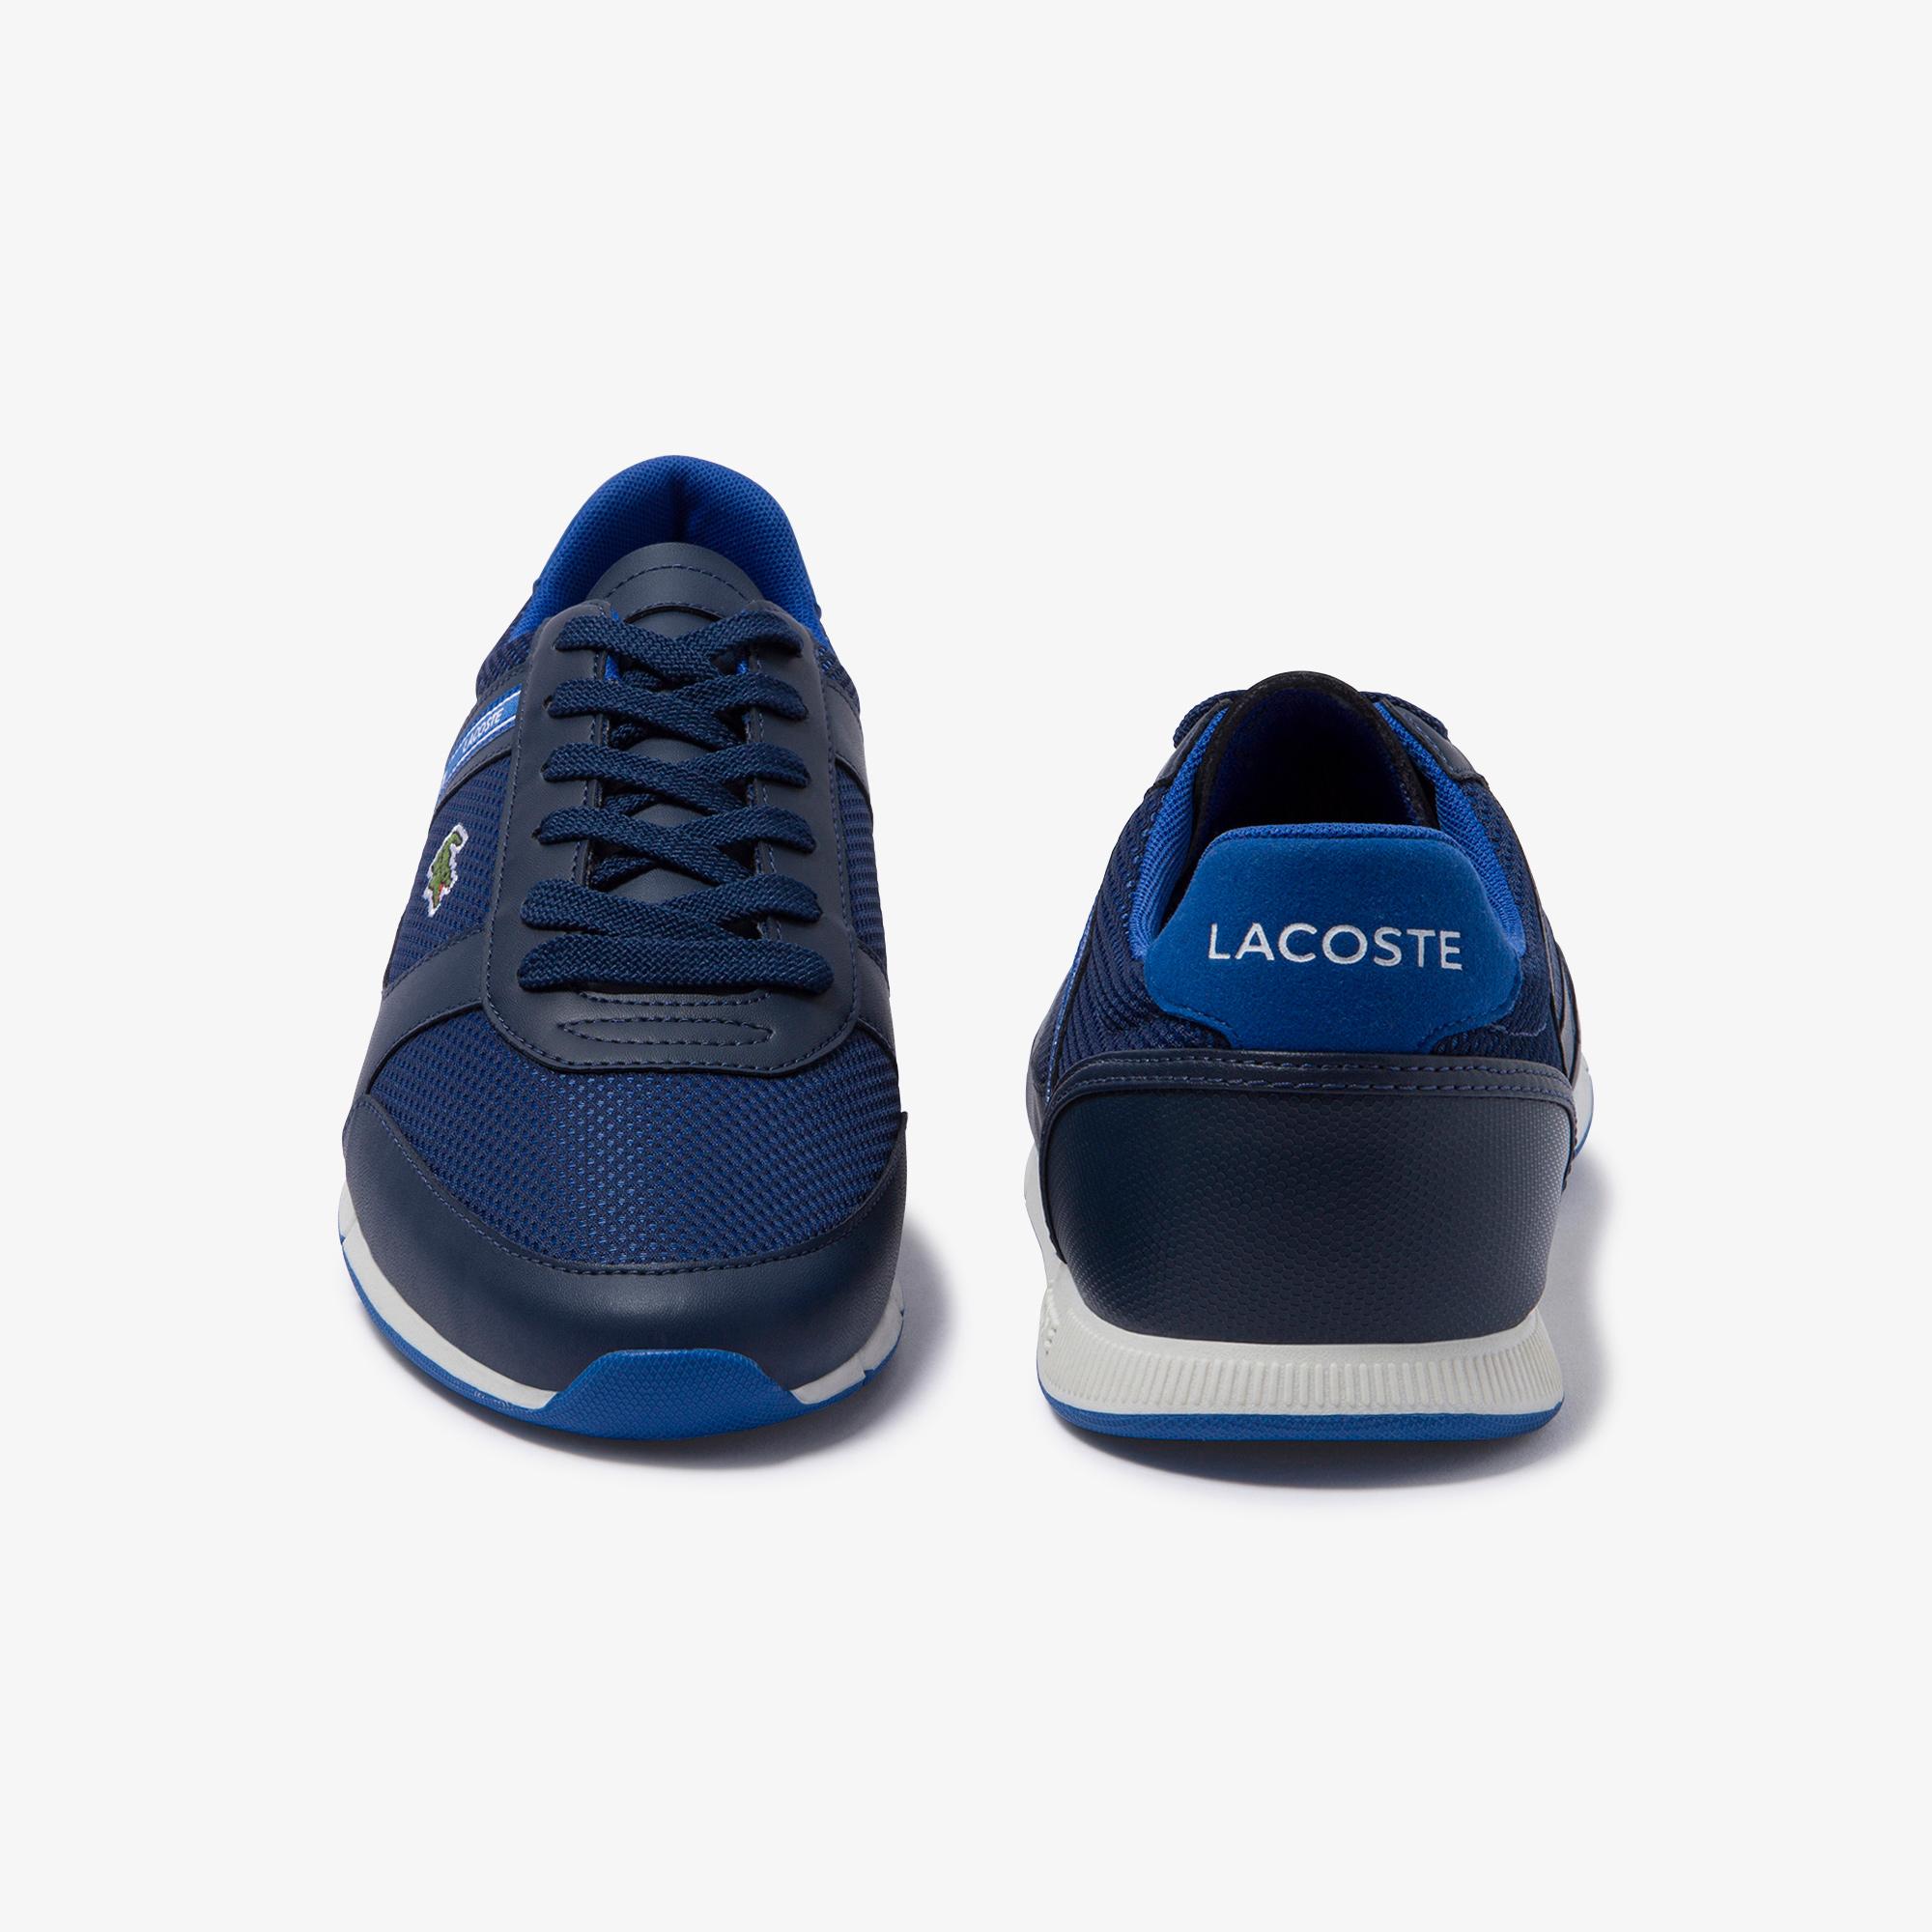 Lacoste Menerva Sport 120 1 Cma Erkek Lacivert - Mavi Ayakkabı. 7